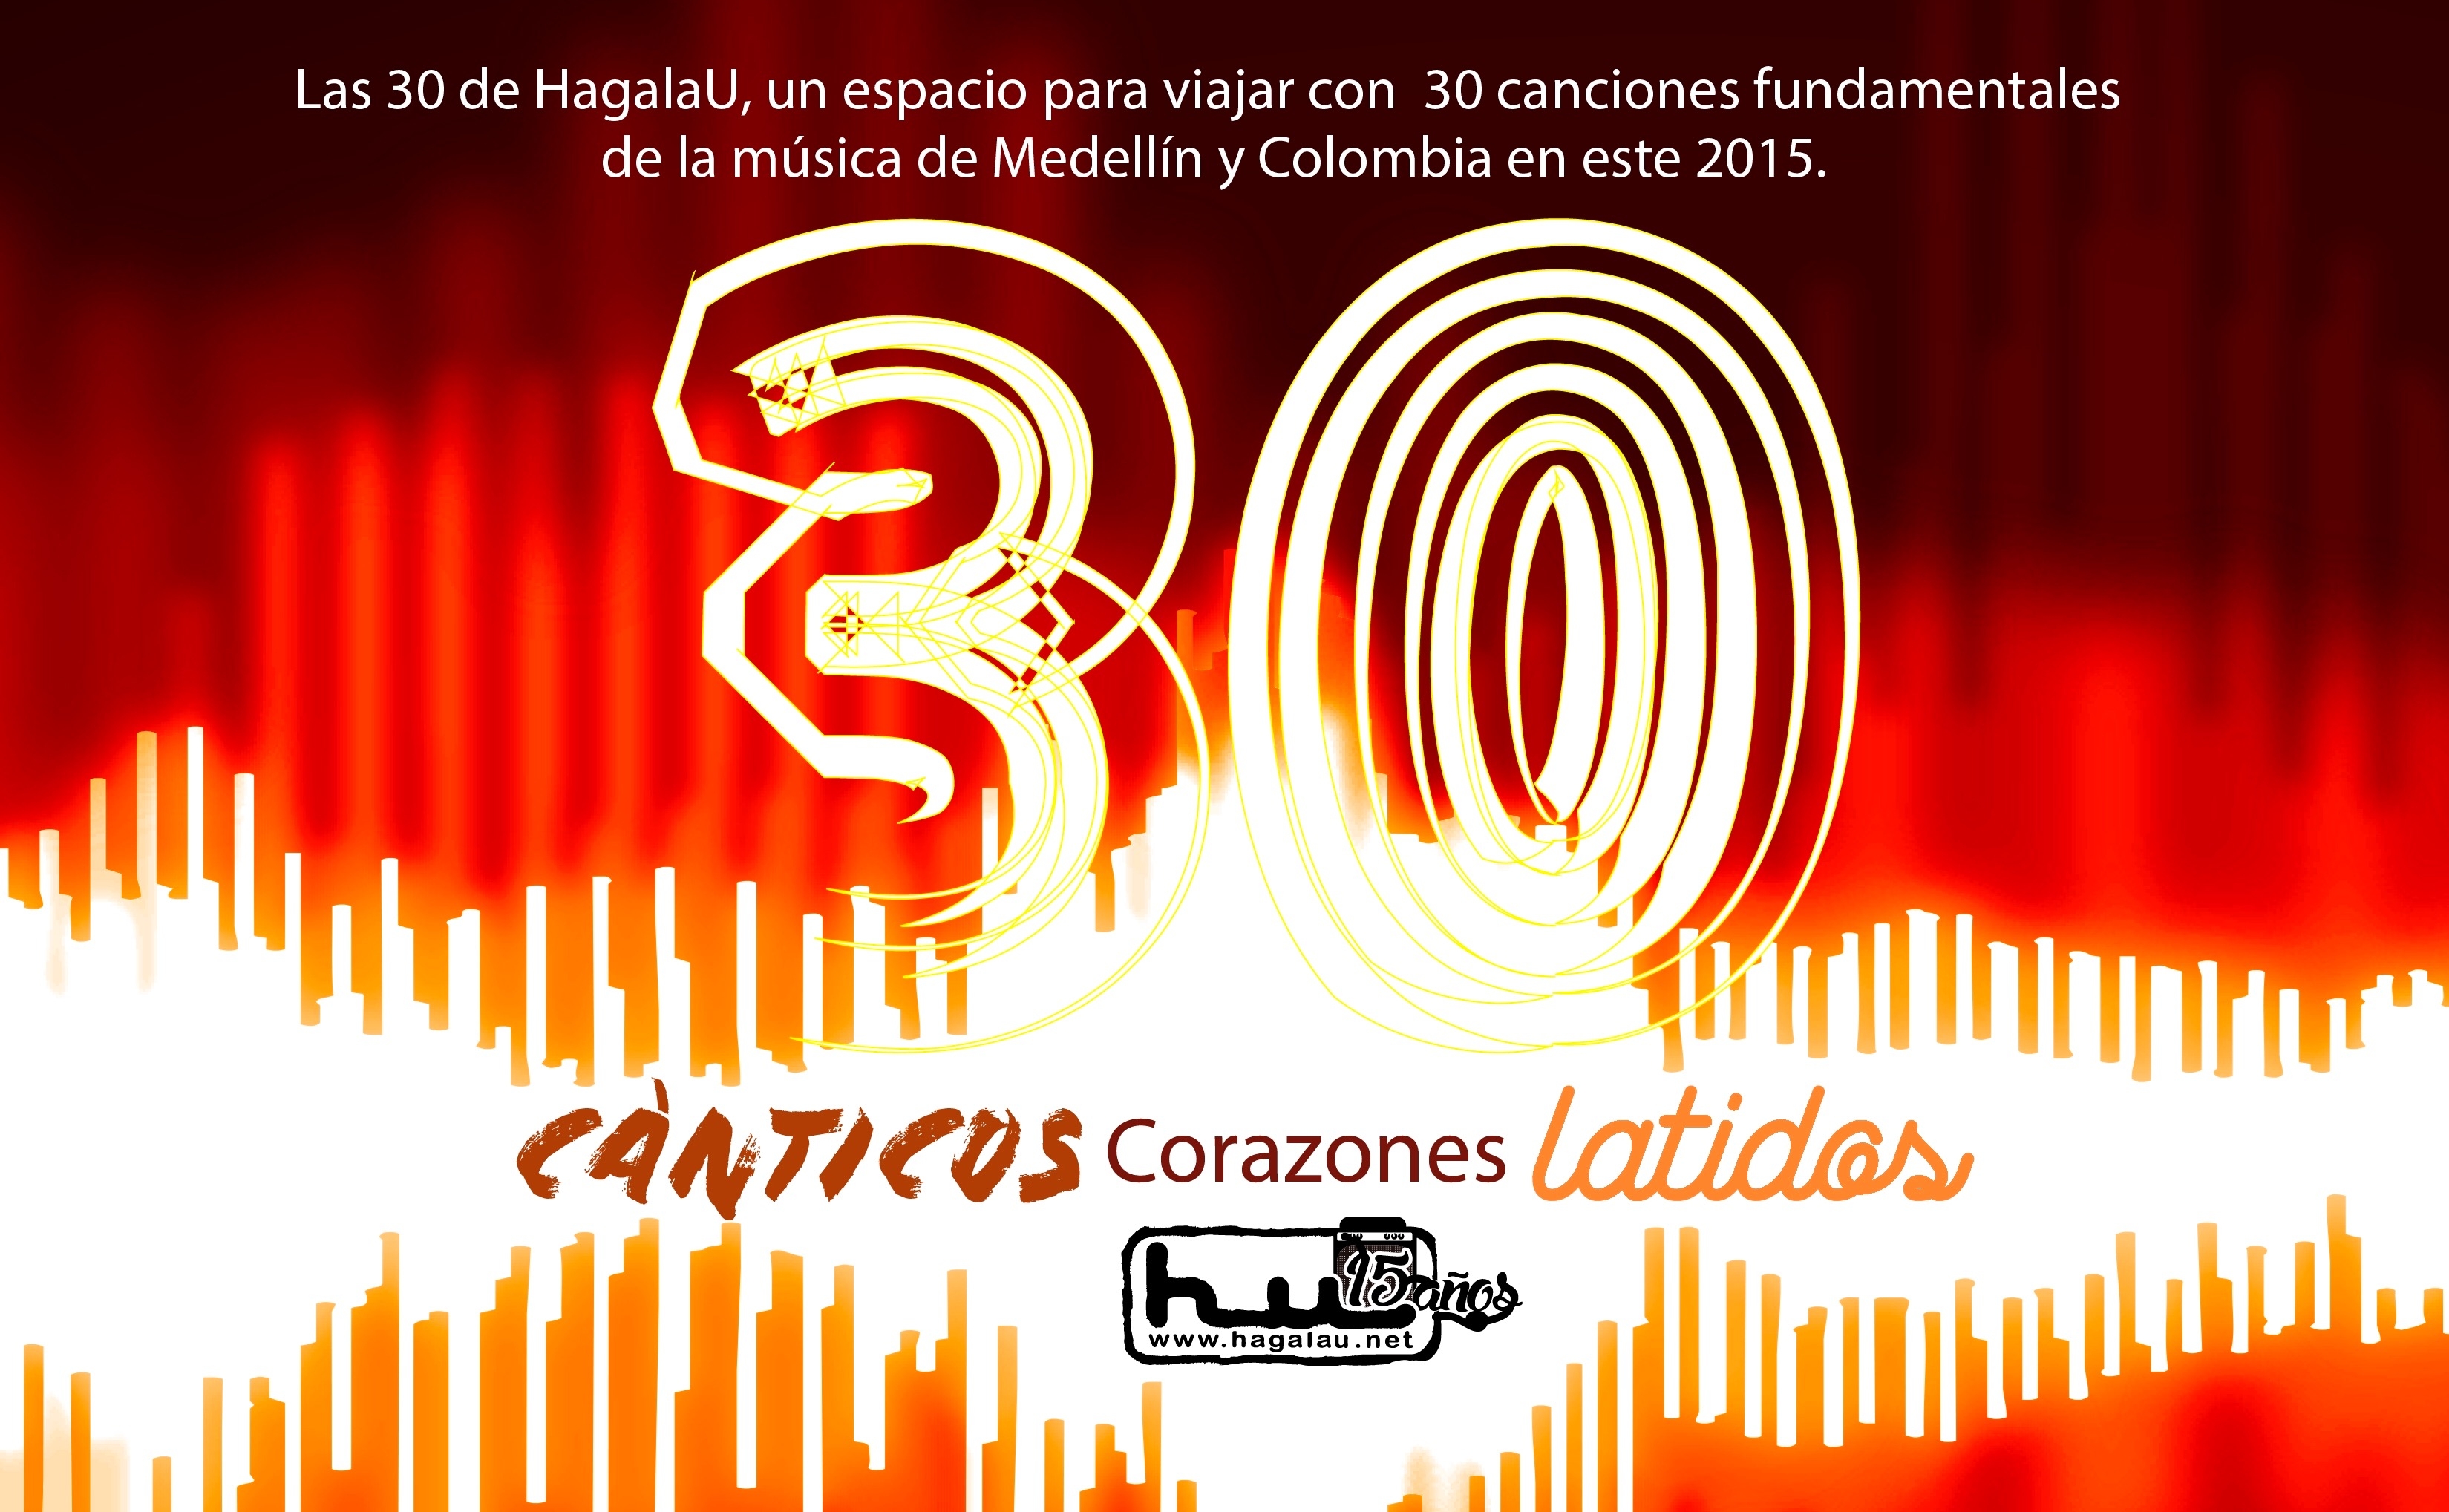 Conozcan las 30 canciones esenciales del 2015 para HagalaU